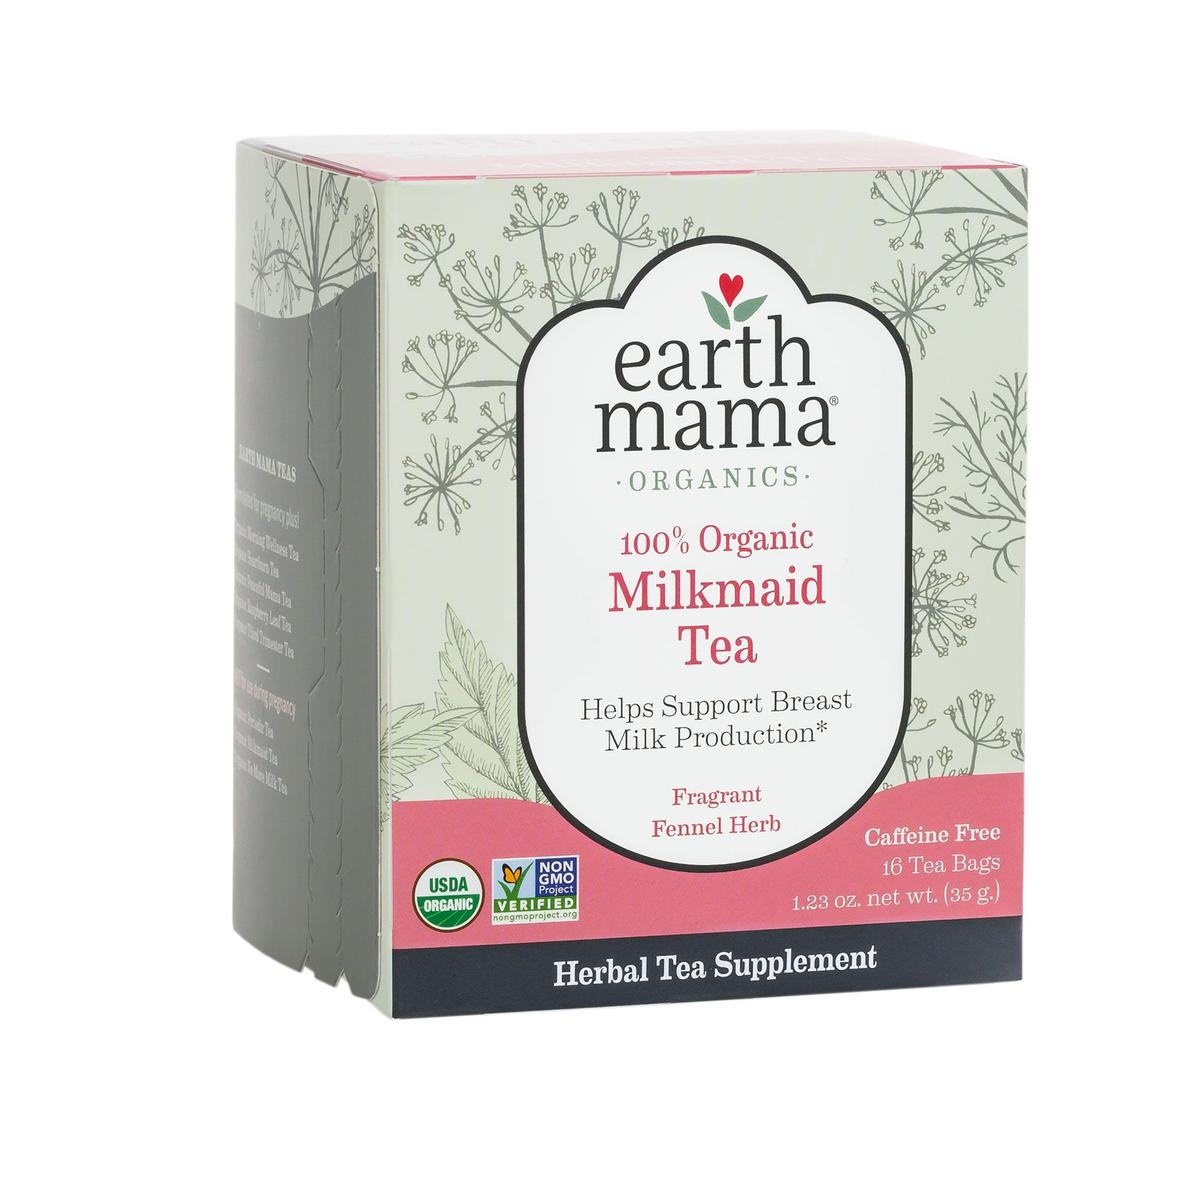 Primary image of Milkmaid Tea